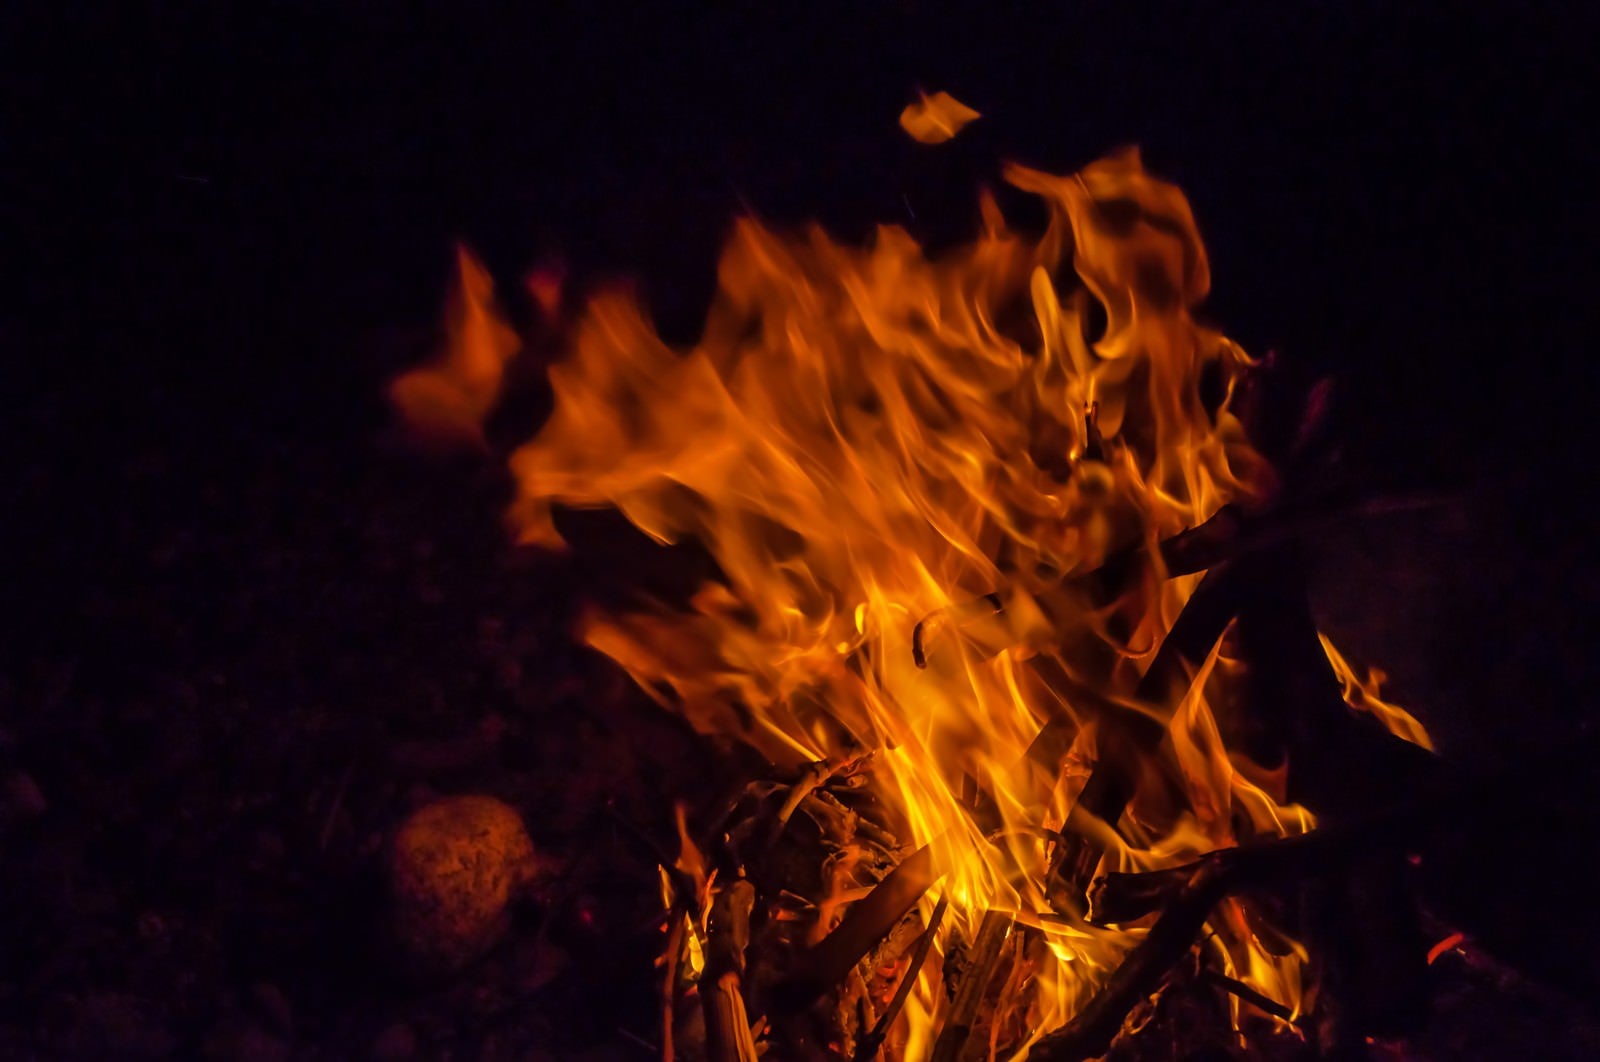 「夜の焚き火」の写真